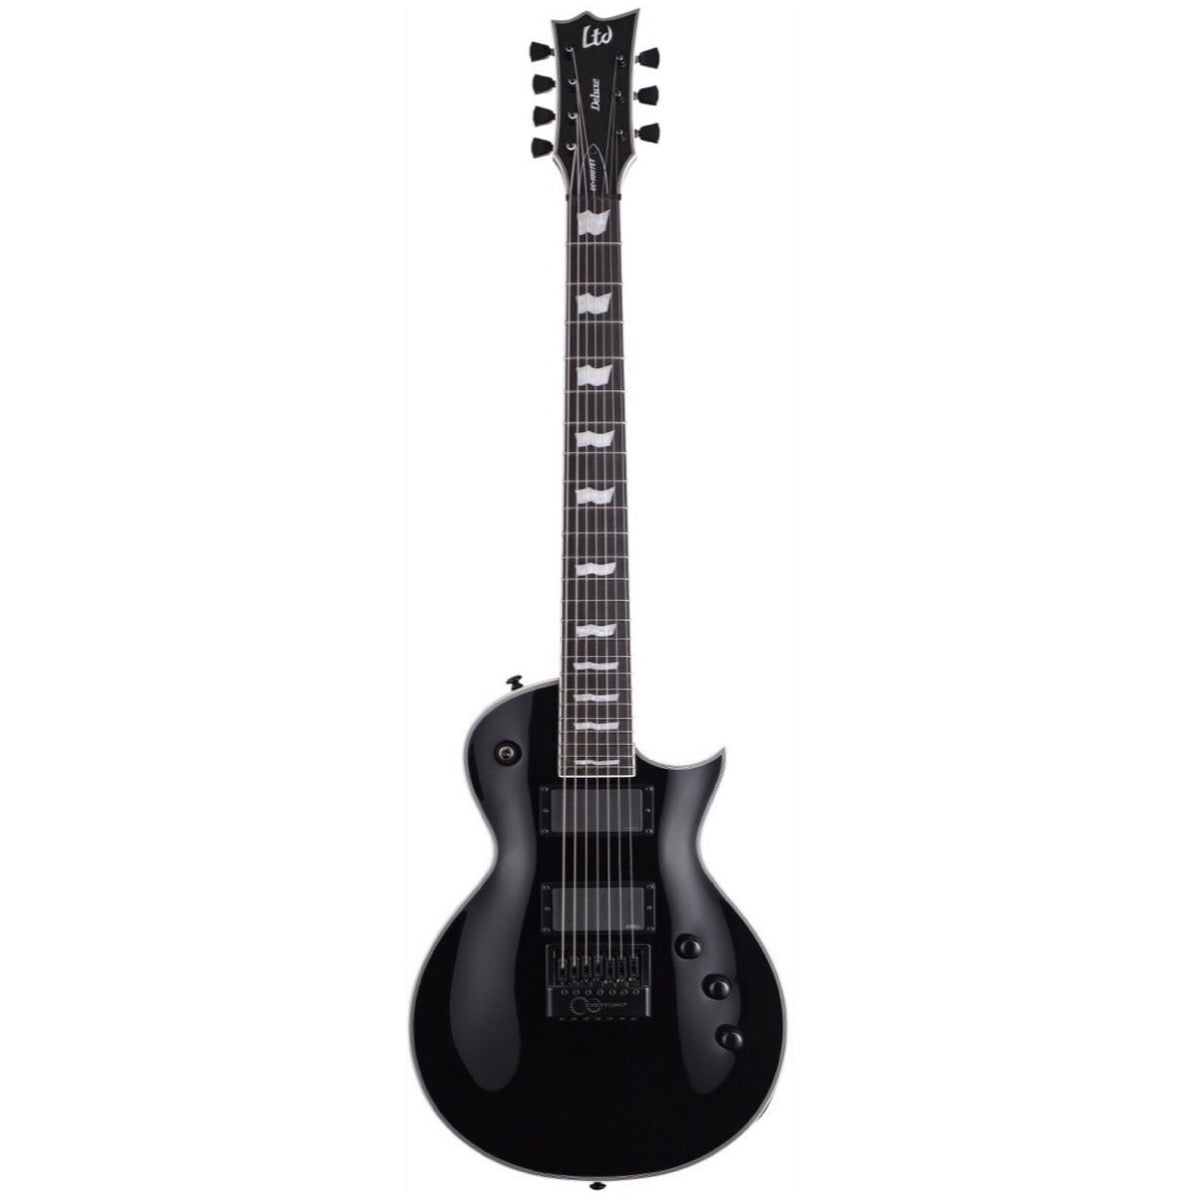 ESP LTD Eclipse EC-1007 EverTune Electric Guitar, 7-String, Black